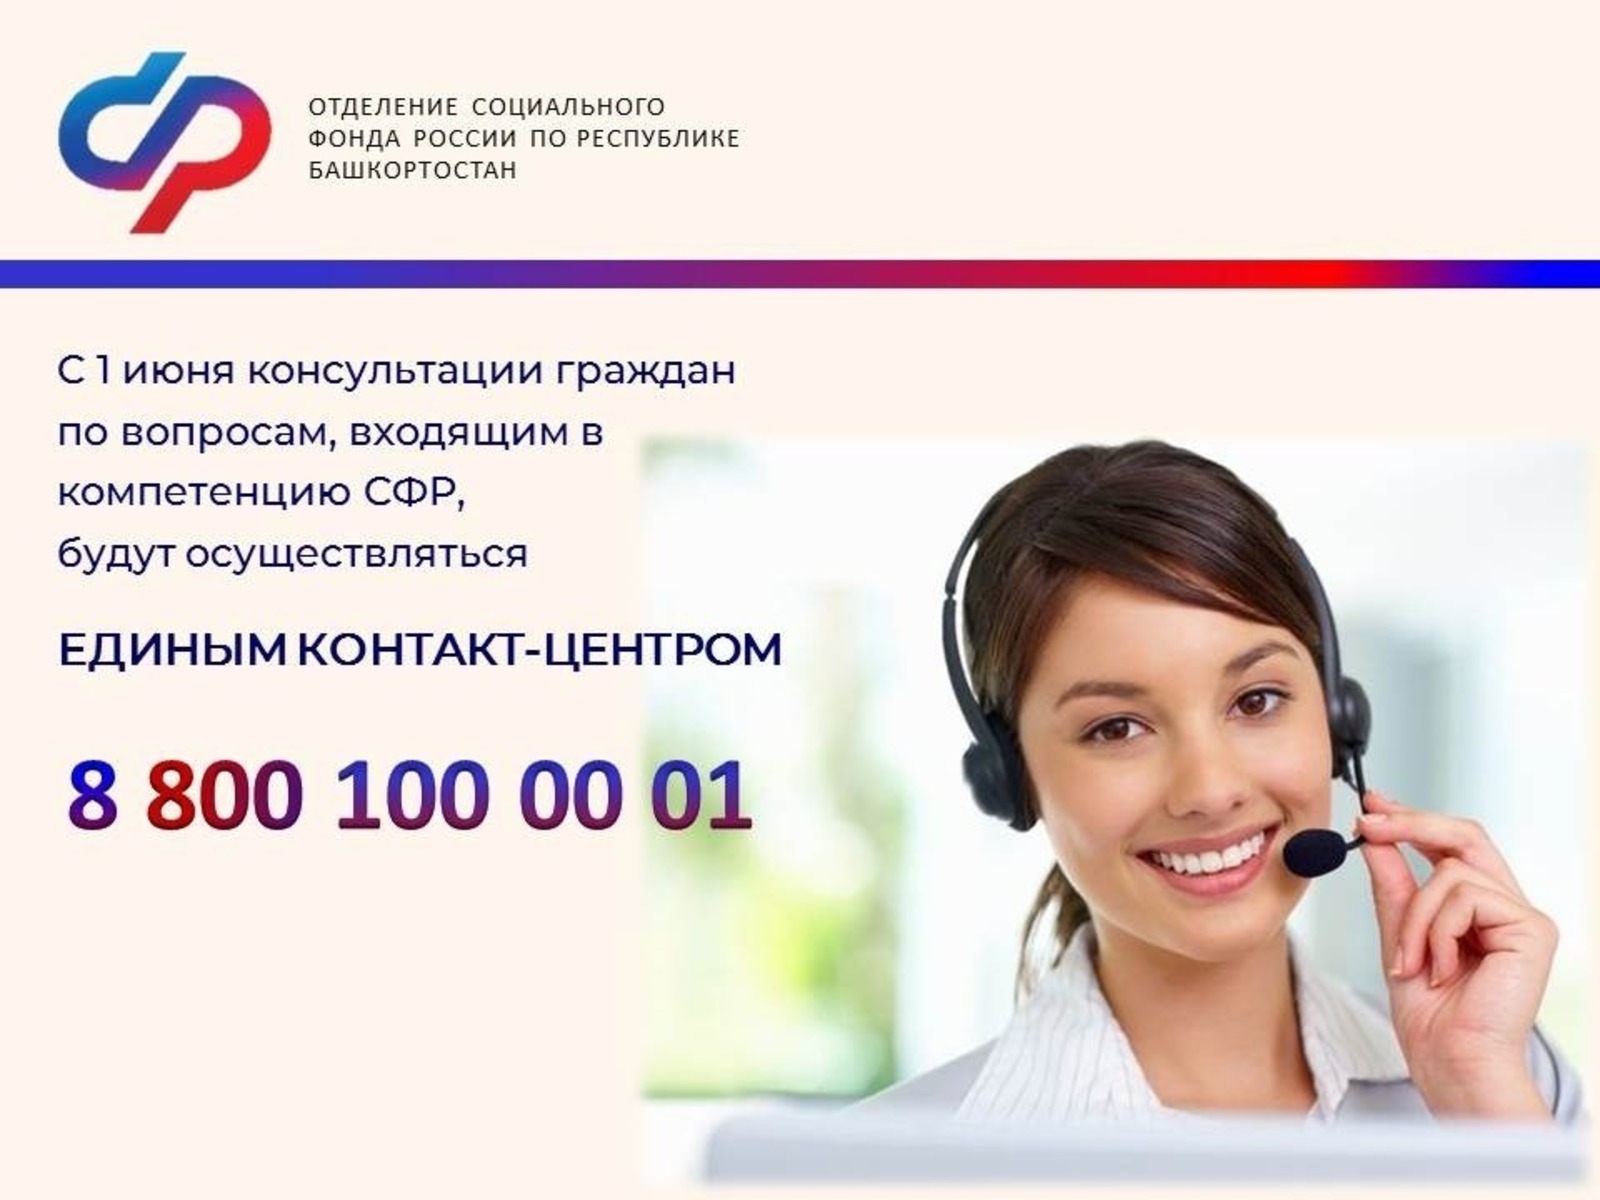 В отделение Социального фонда России по РБ можно позвонить единому номеру